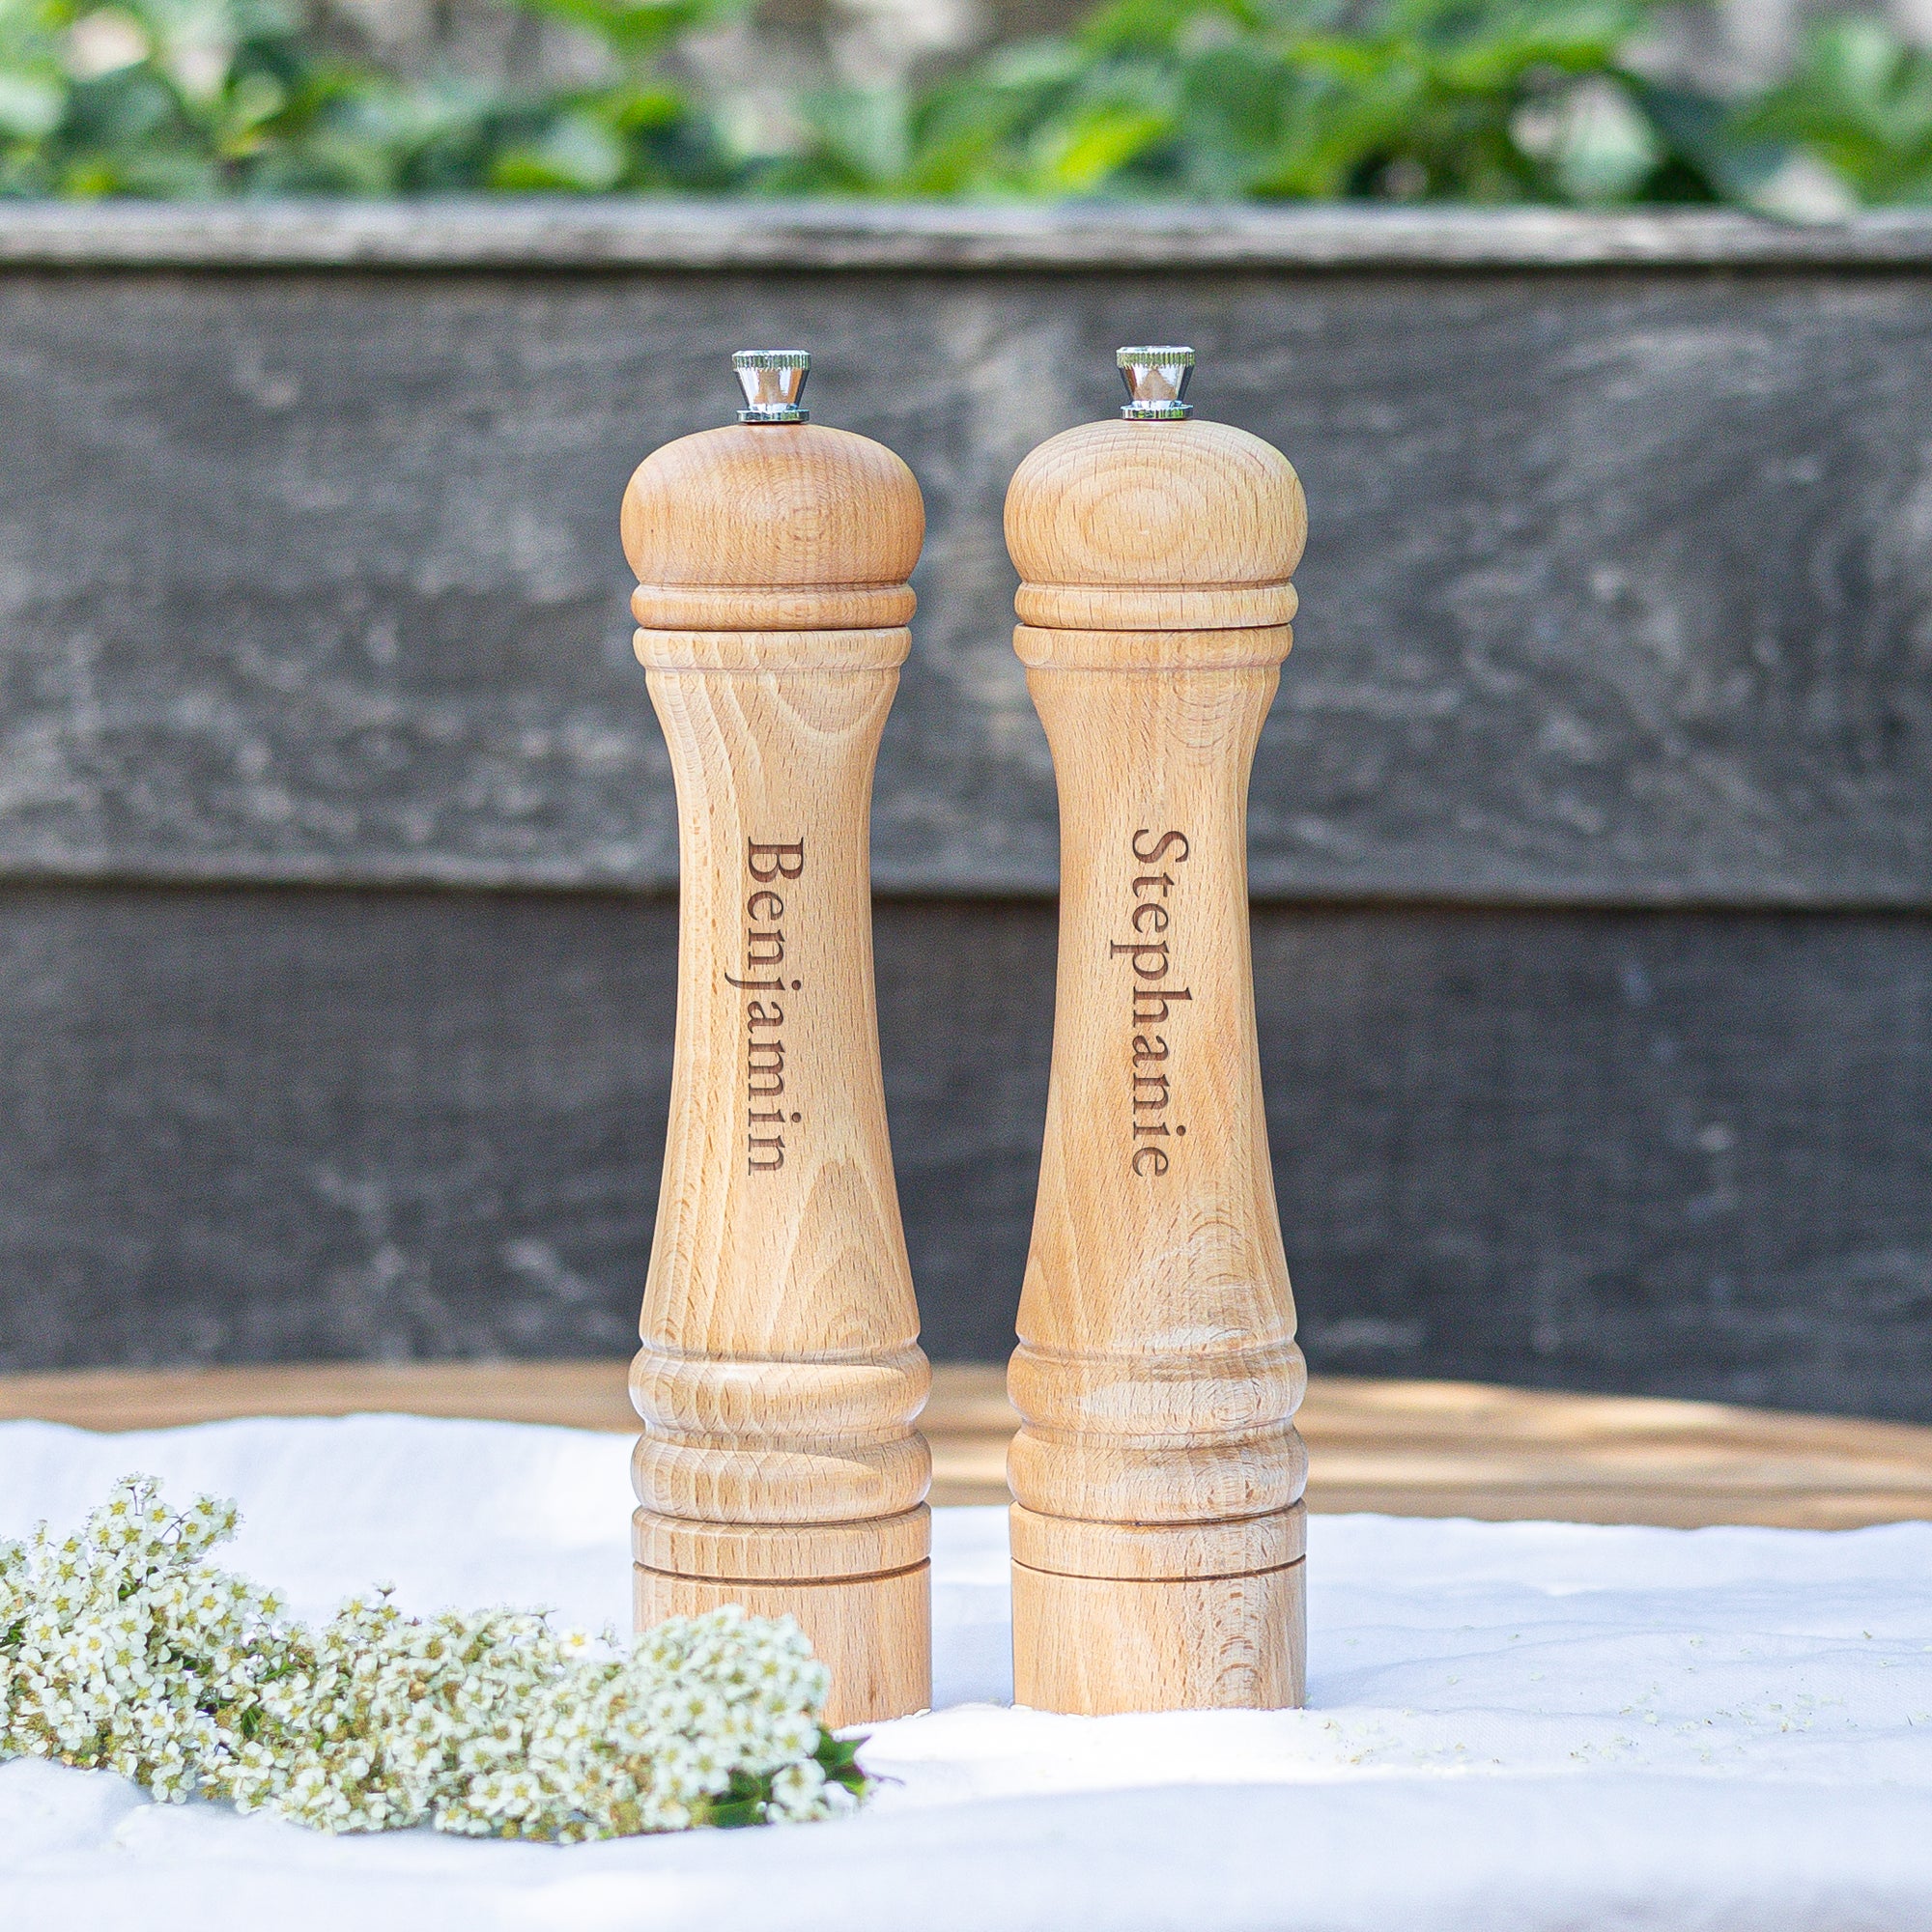 Personalised salt & pepper grinder set - XL - Engraved